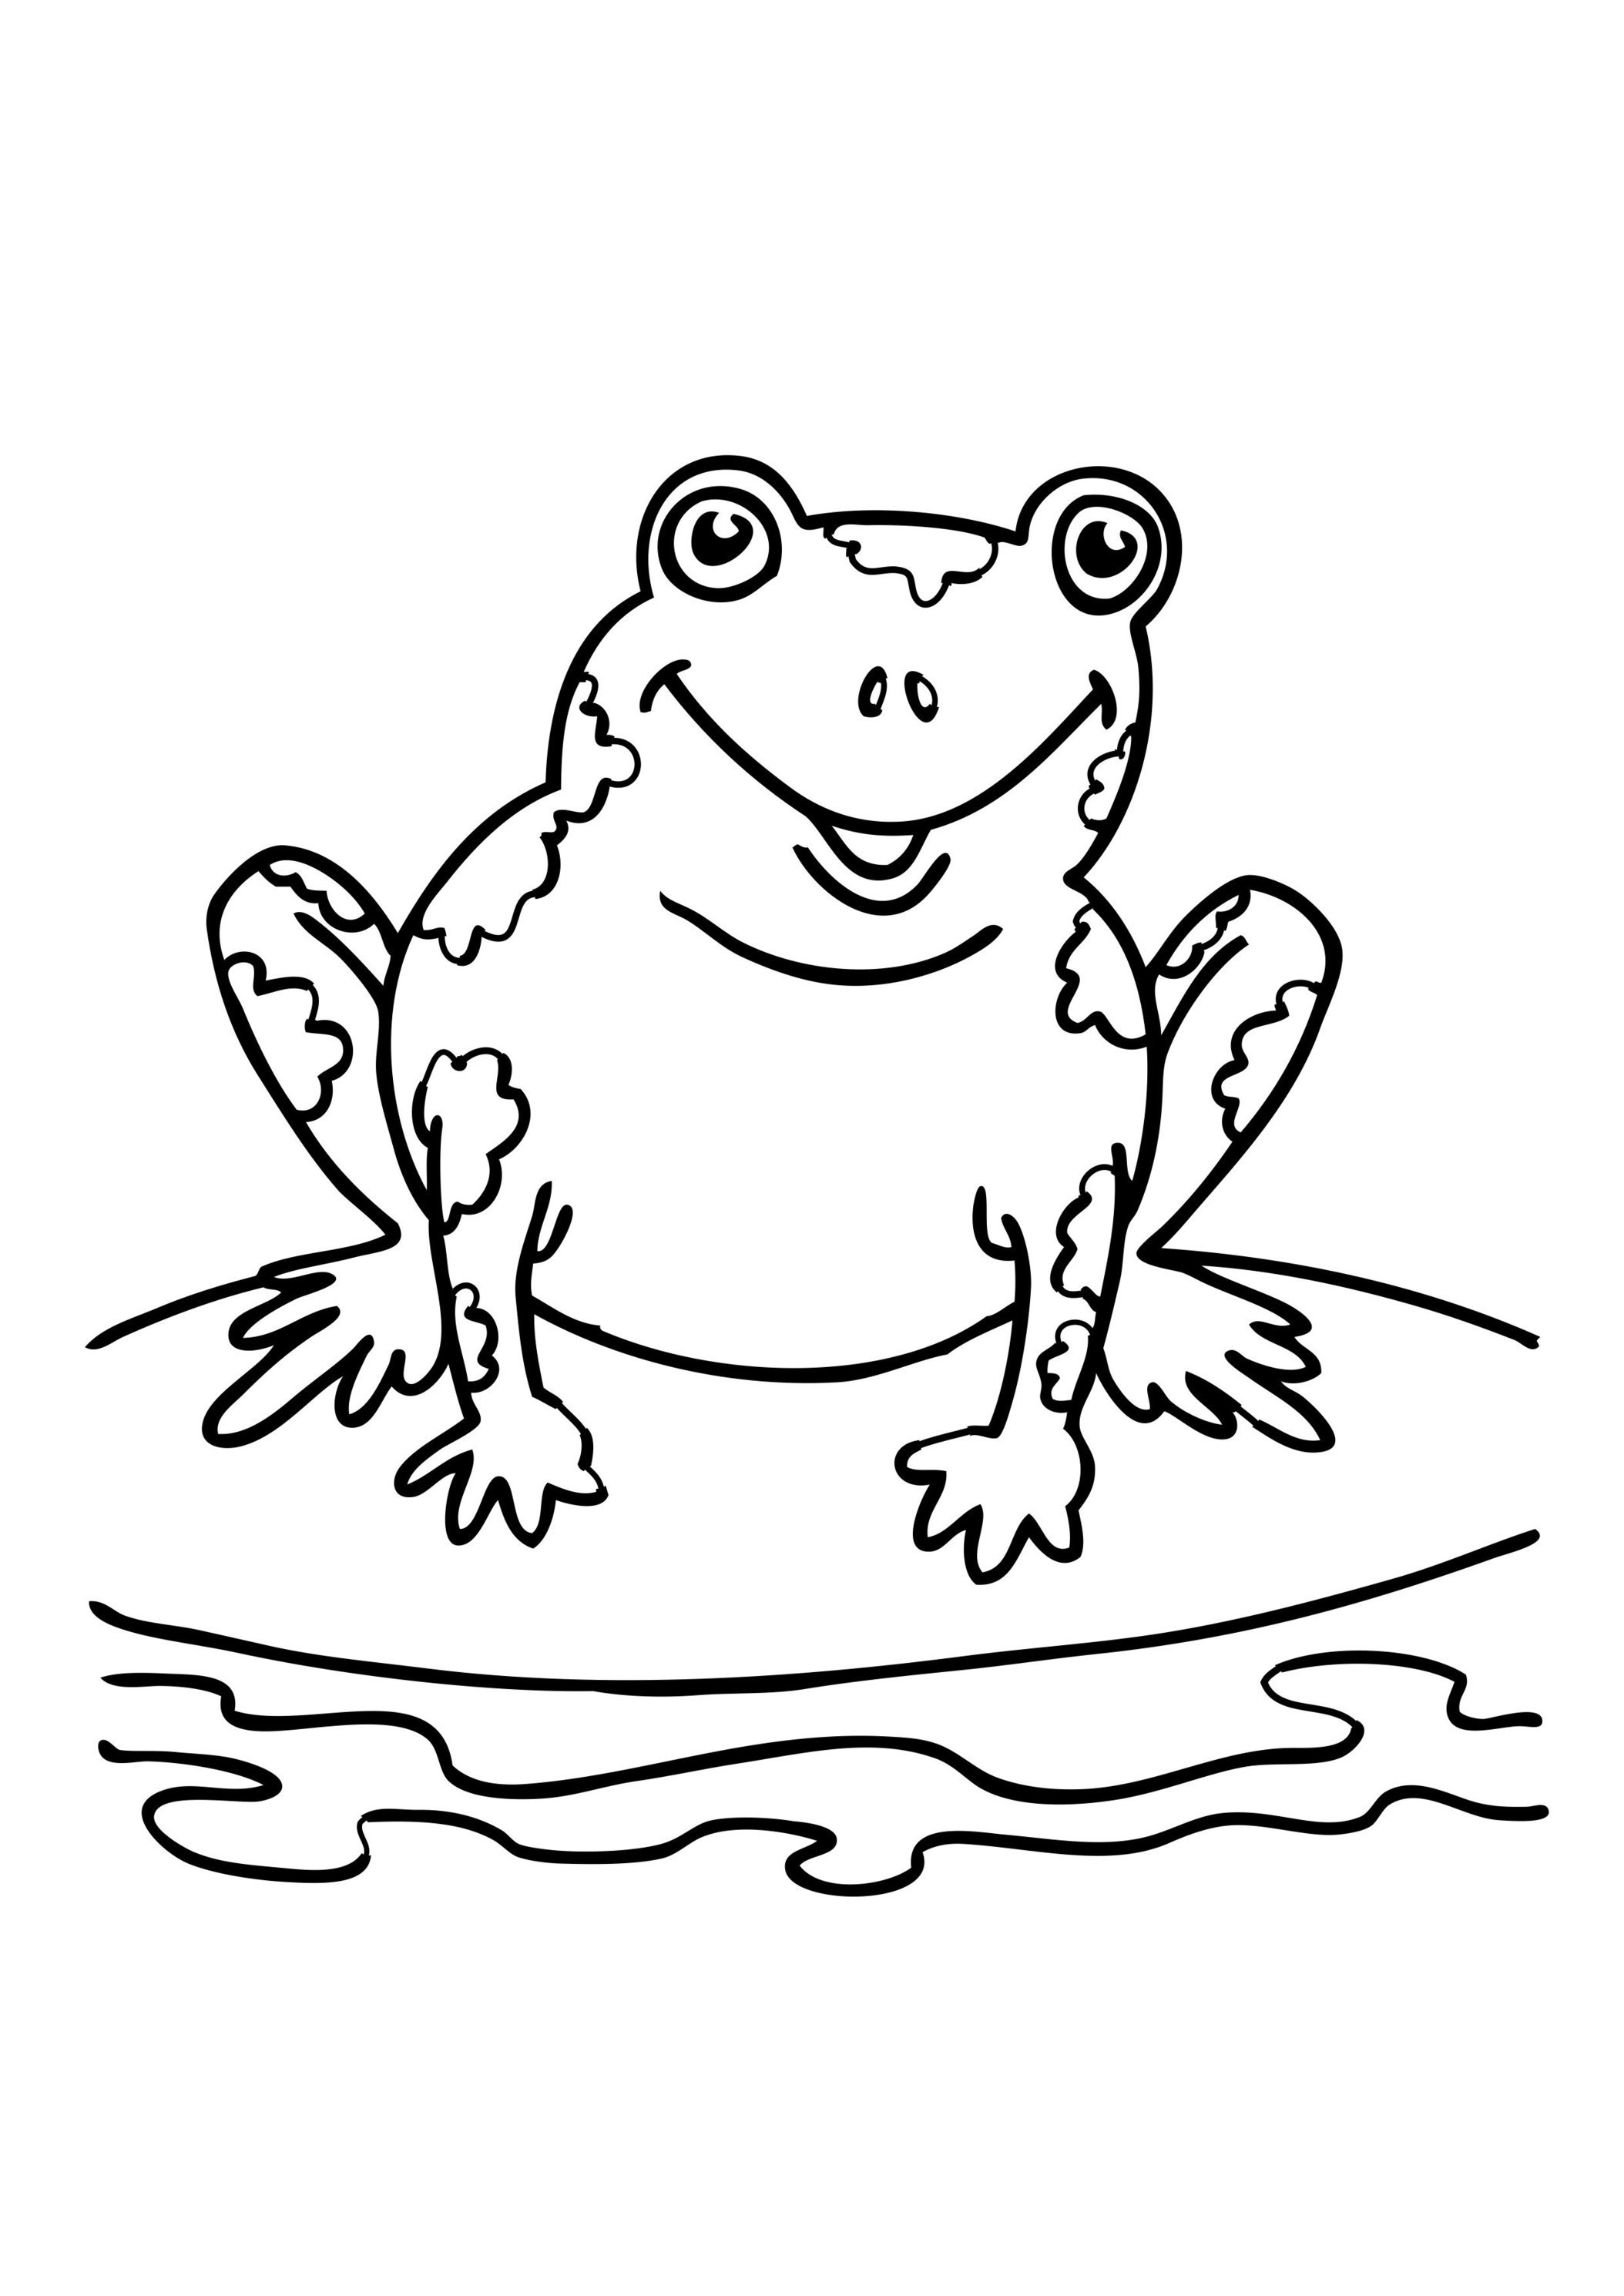 Xem hơn 48 ảnh về hình vẽ con ếch  daotaonec